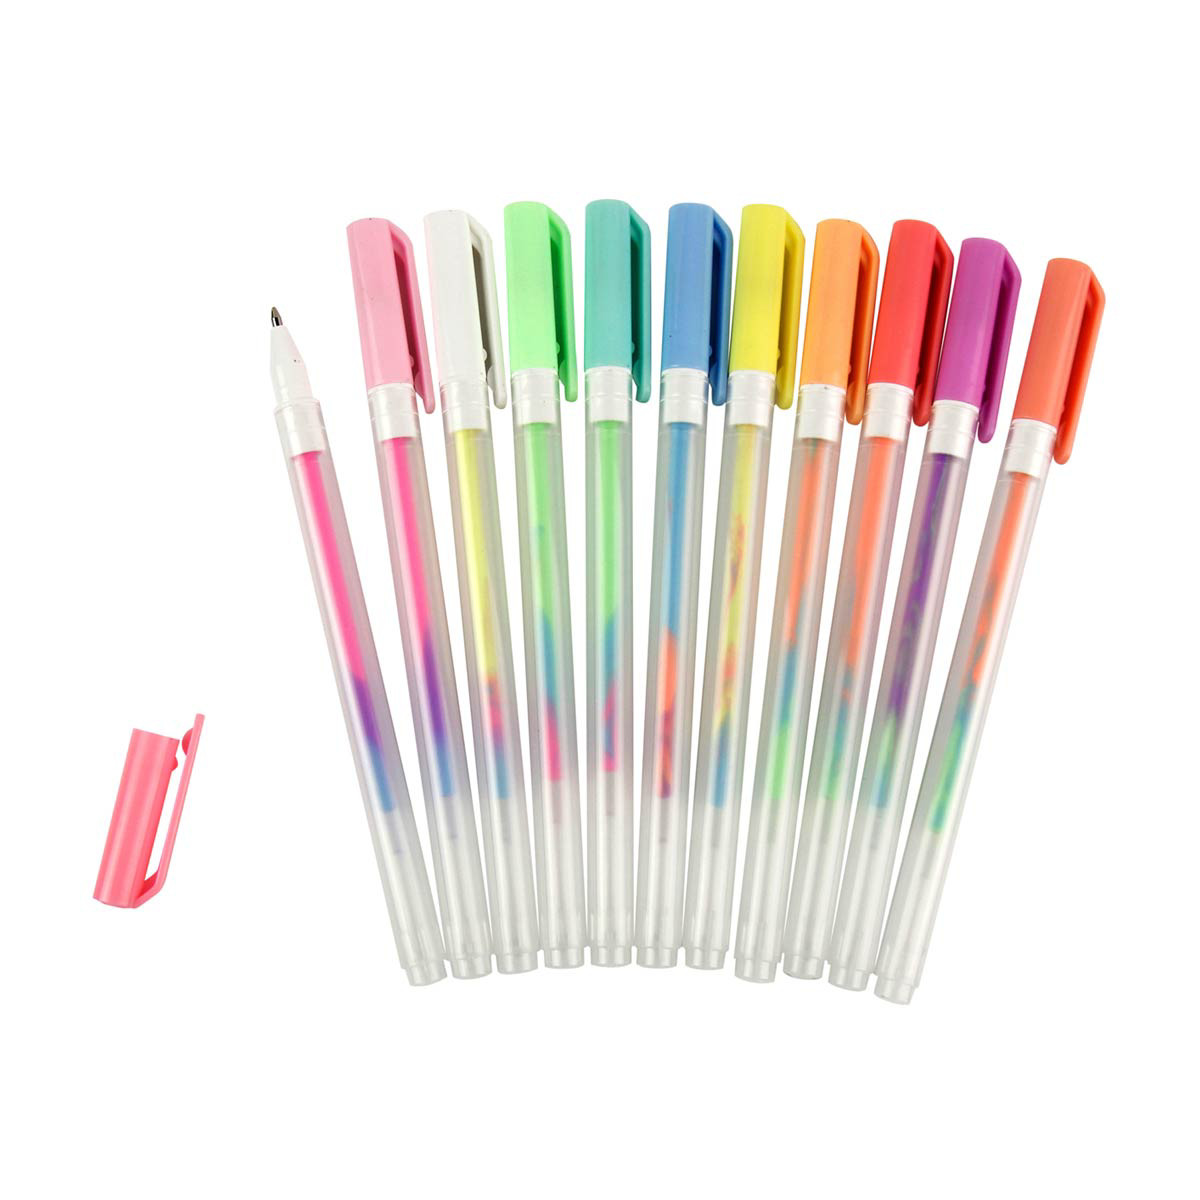 Buy Set of 50 Multi Color Gel Pens at ShopLC.